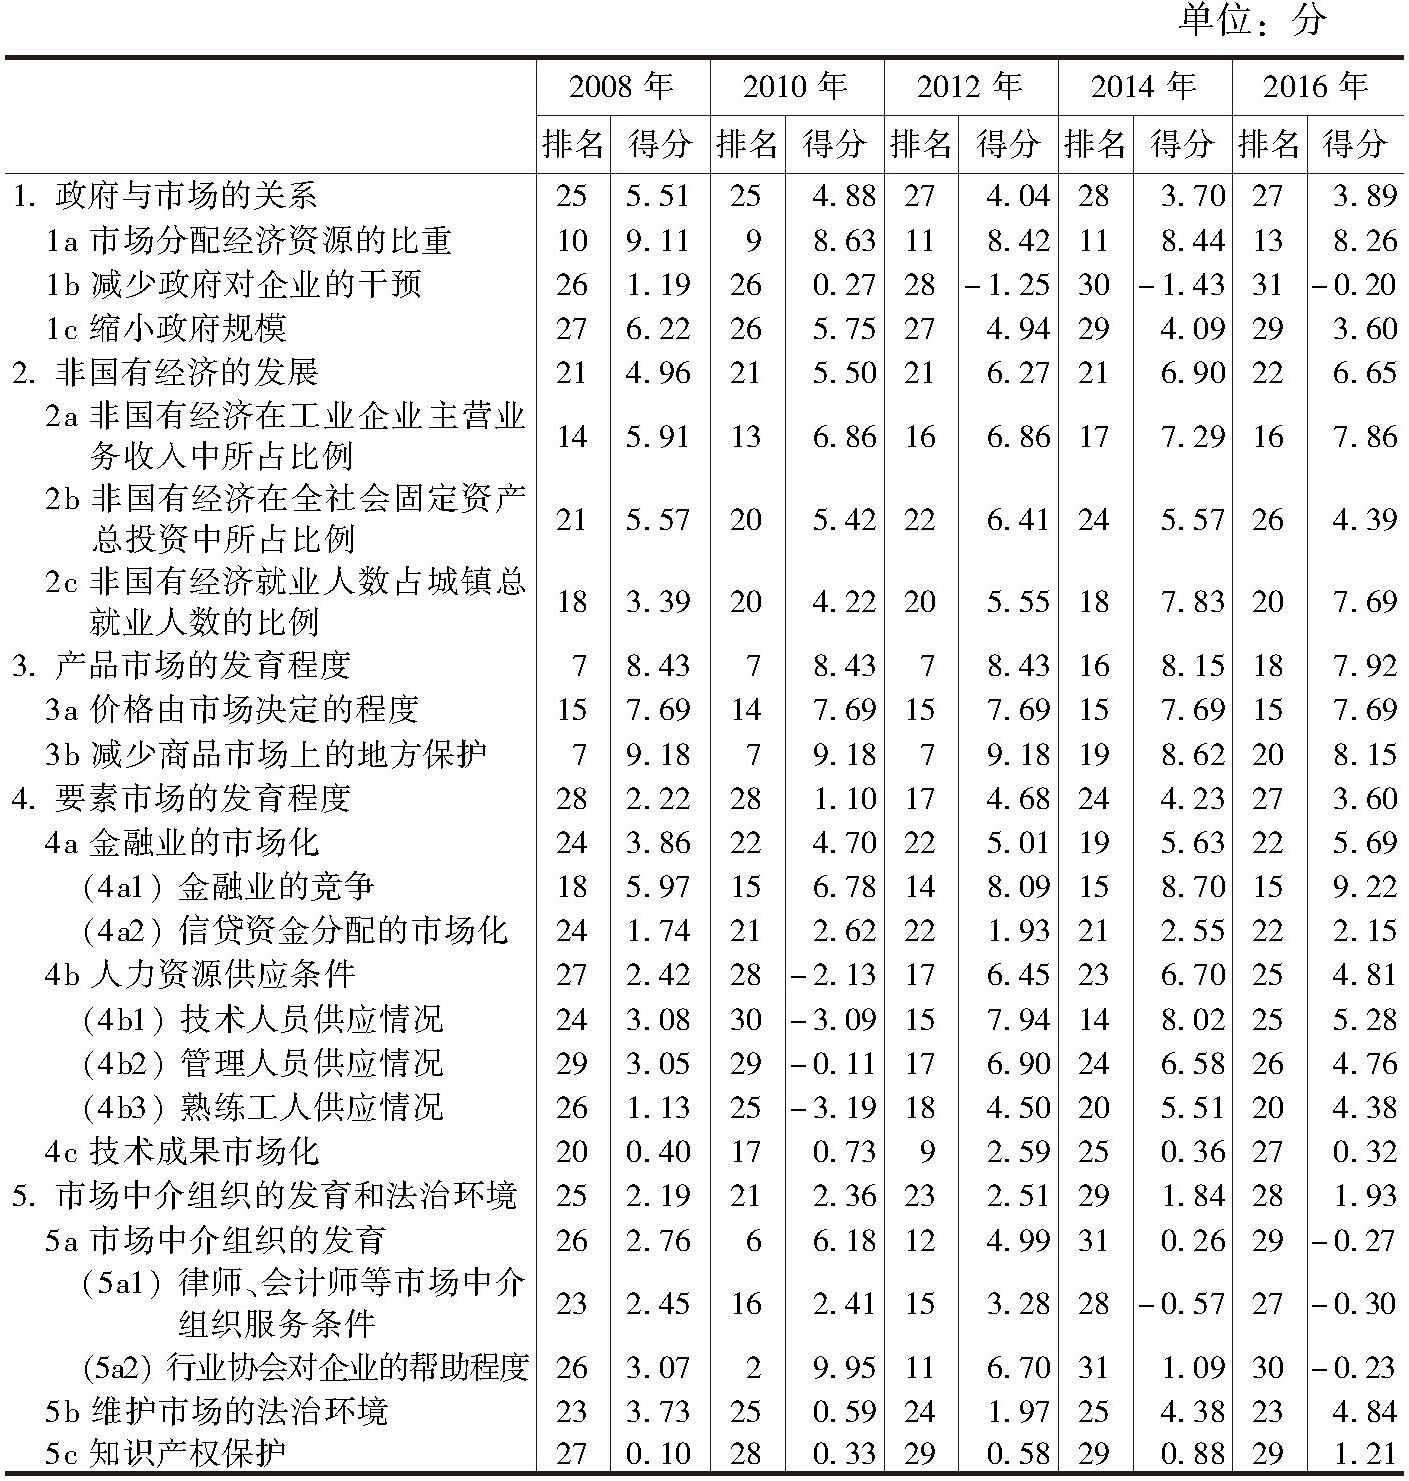 内蒙古市场化各方面指数和分项指数的排名及得分